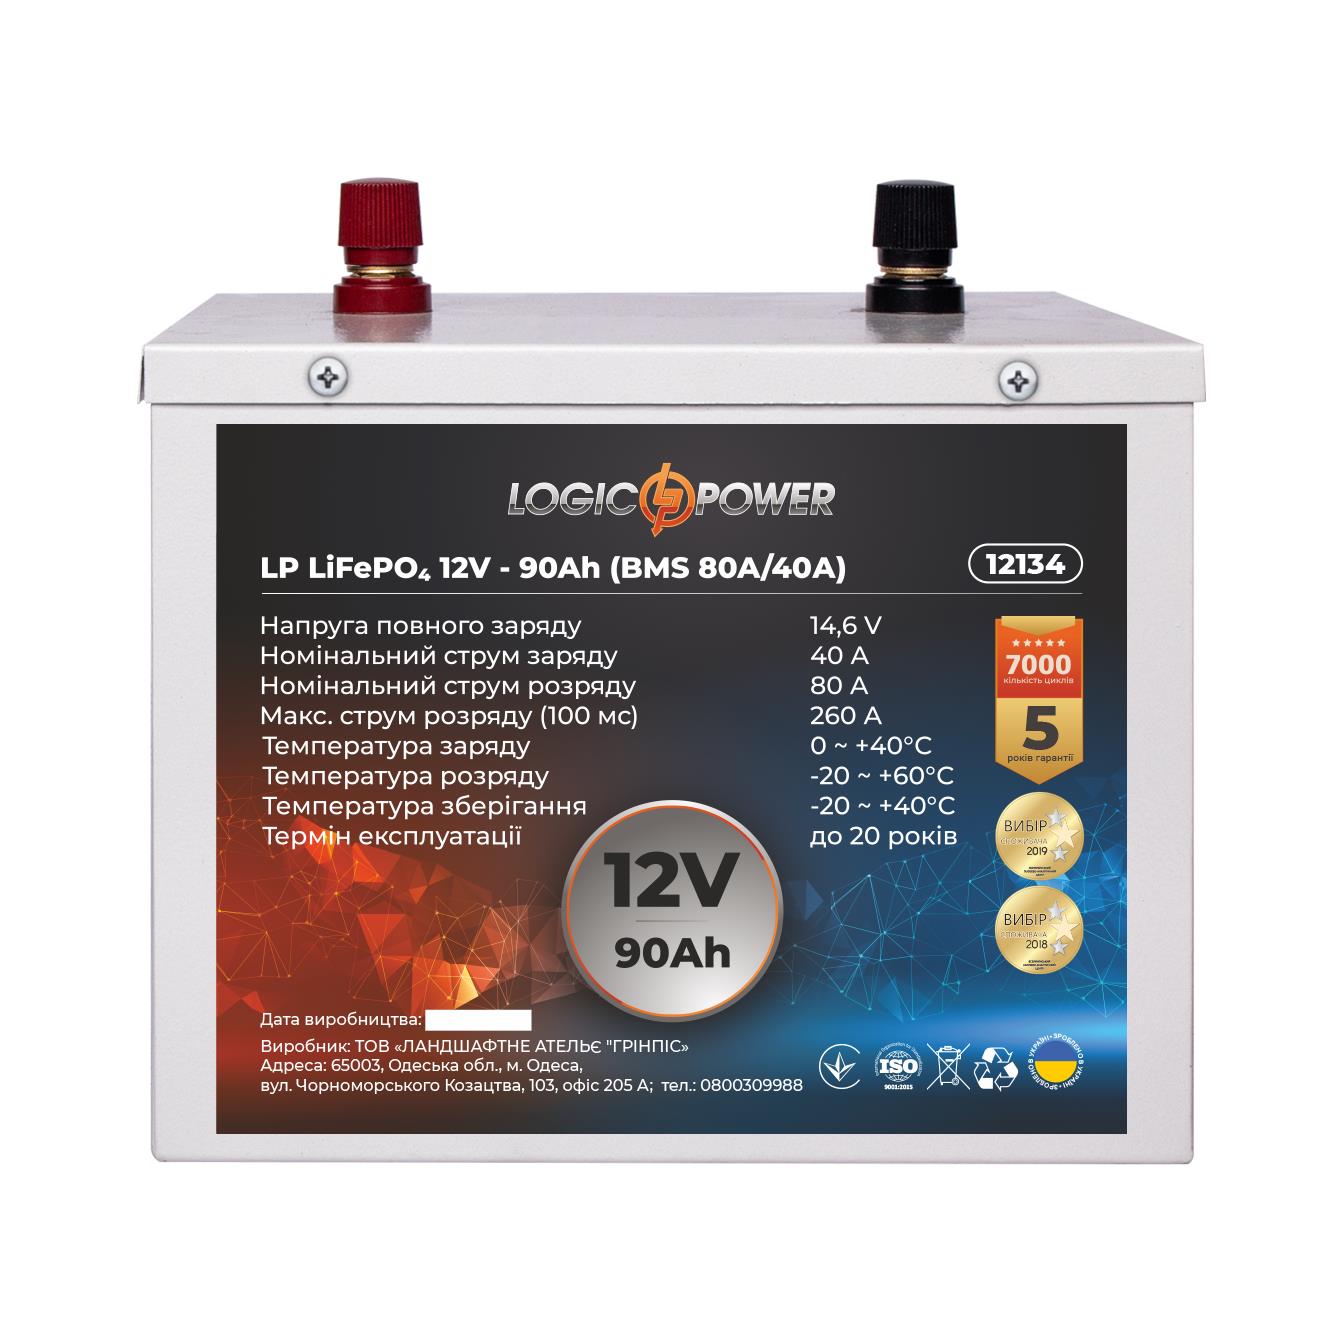 Акумулятор літій-залізо-фосфатний LogicPower LP LiFePO4 12V - 90 Ah (BMS 80A/40A) метал (12134) в Івано-Франківську